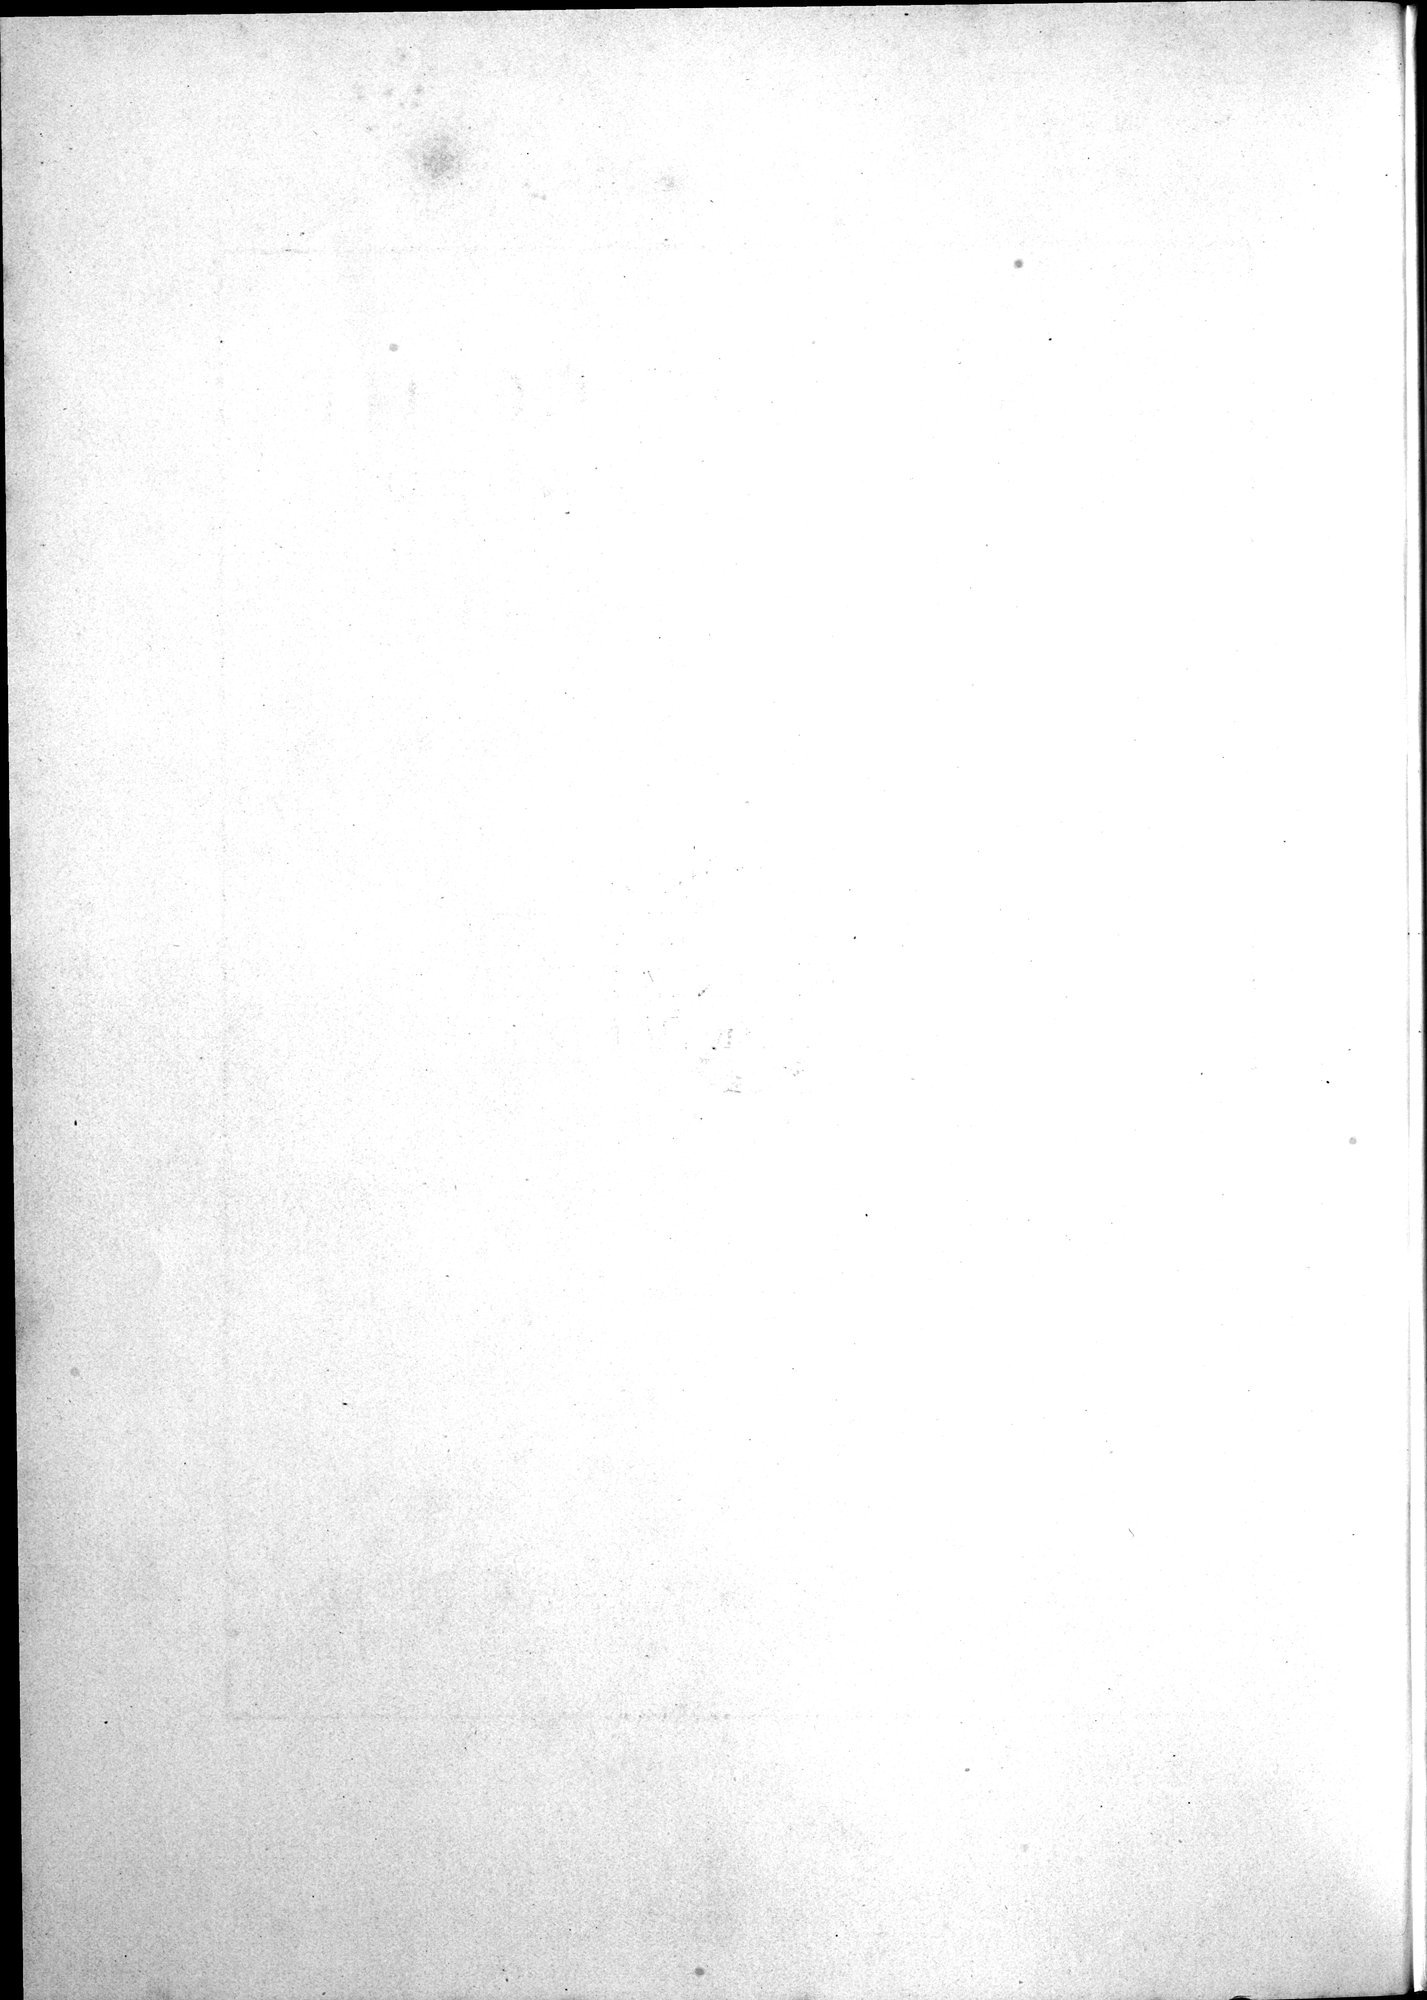 Kunstgeschichte der Seidenweberei : vol.2 / Page 8 (Grayscale High Resolution Image)